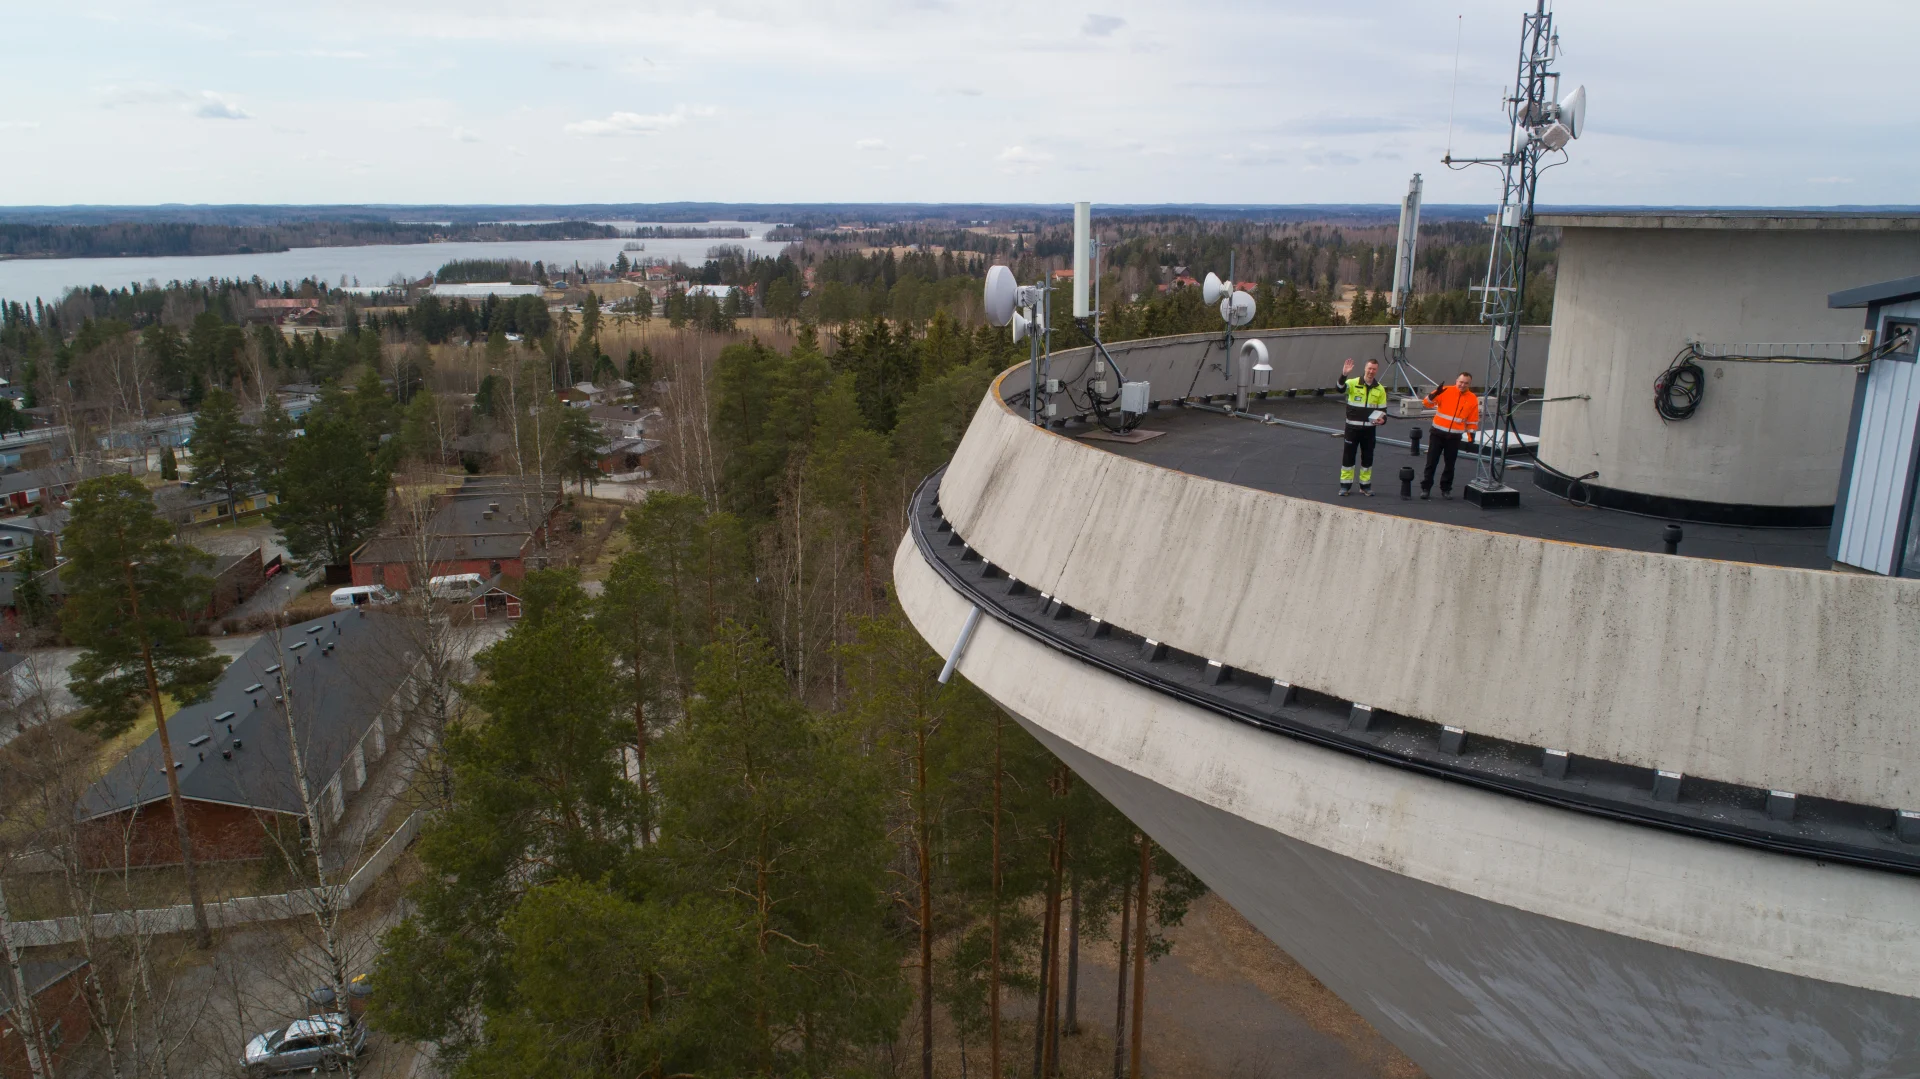 Instan työntekijä ja asiakas ilmasta kuvattuna Lempäälän vesitornin huipulla, tornista osa rajautuu pois ja vasemmalta näkyy taustan maisemaa. 